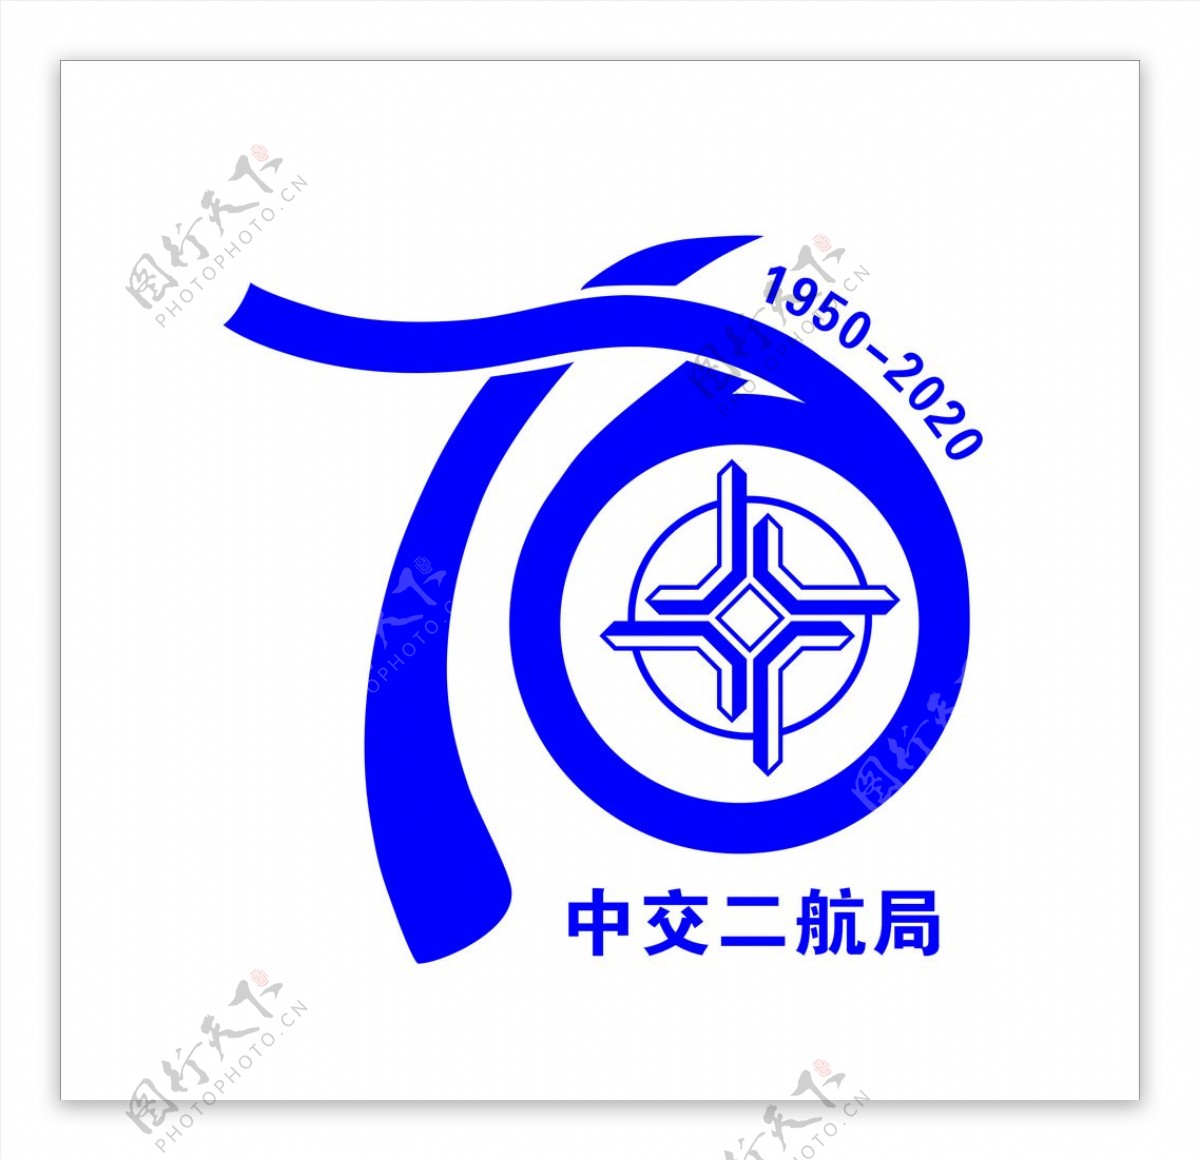 中交logo图片